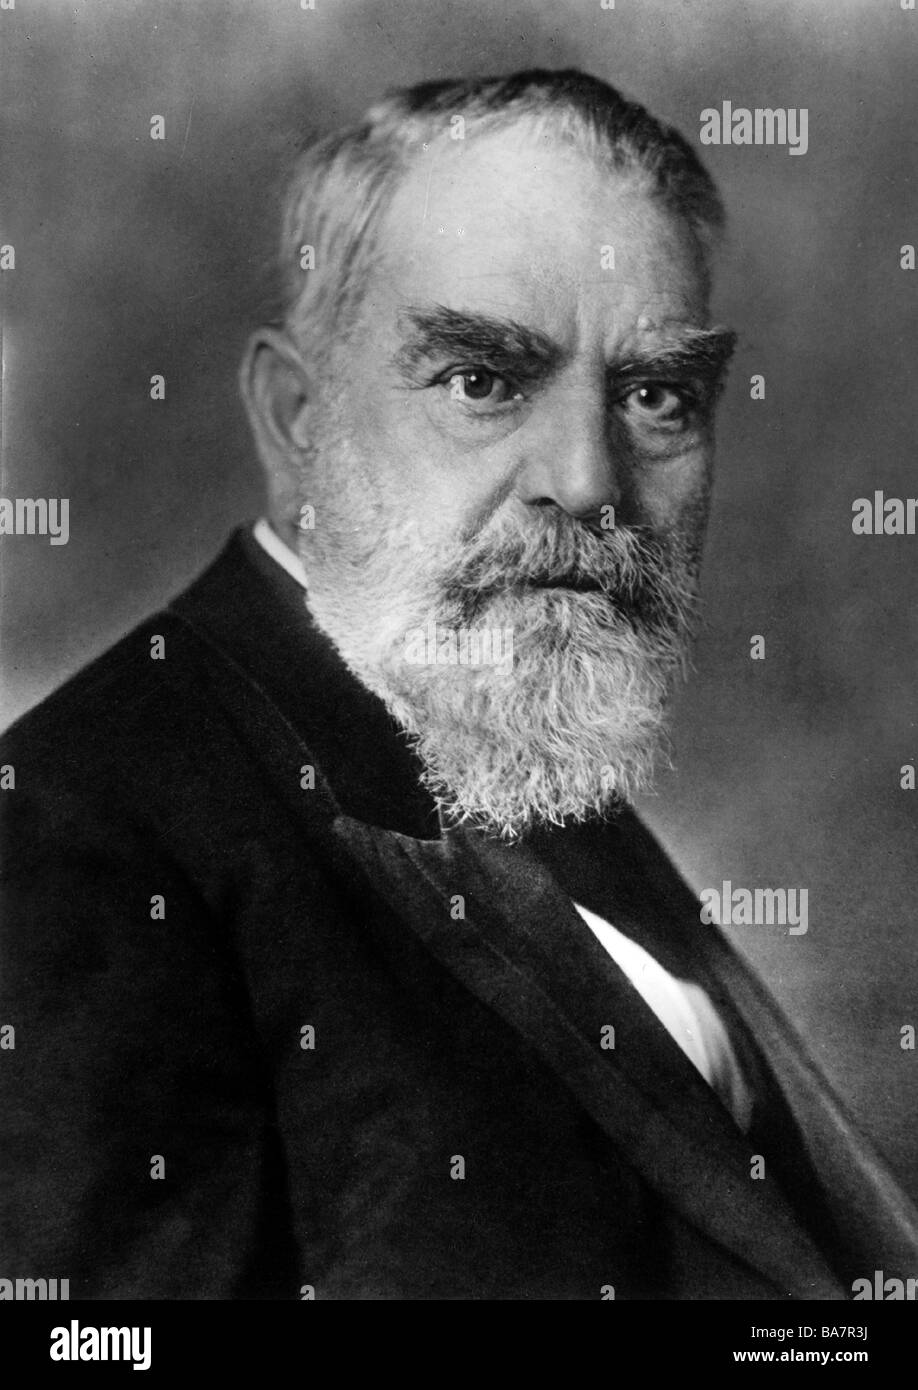 Miller, Oskar von, 7.5.1855 - 9.4.1934, German engineer, portrait, circa 1925, Stock Photo